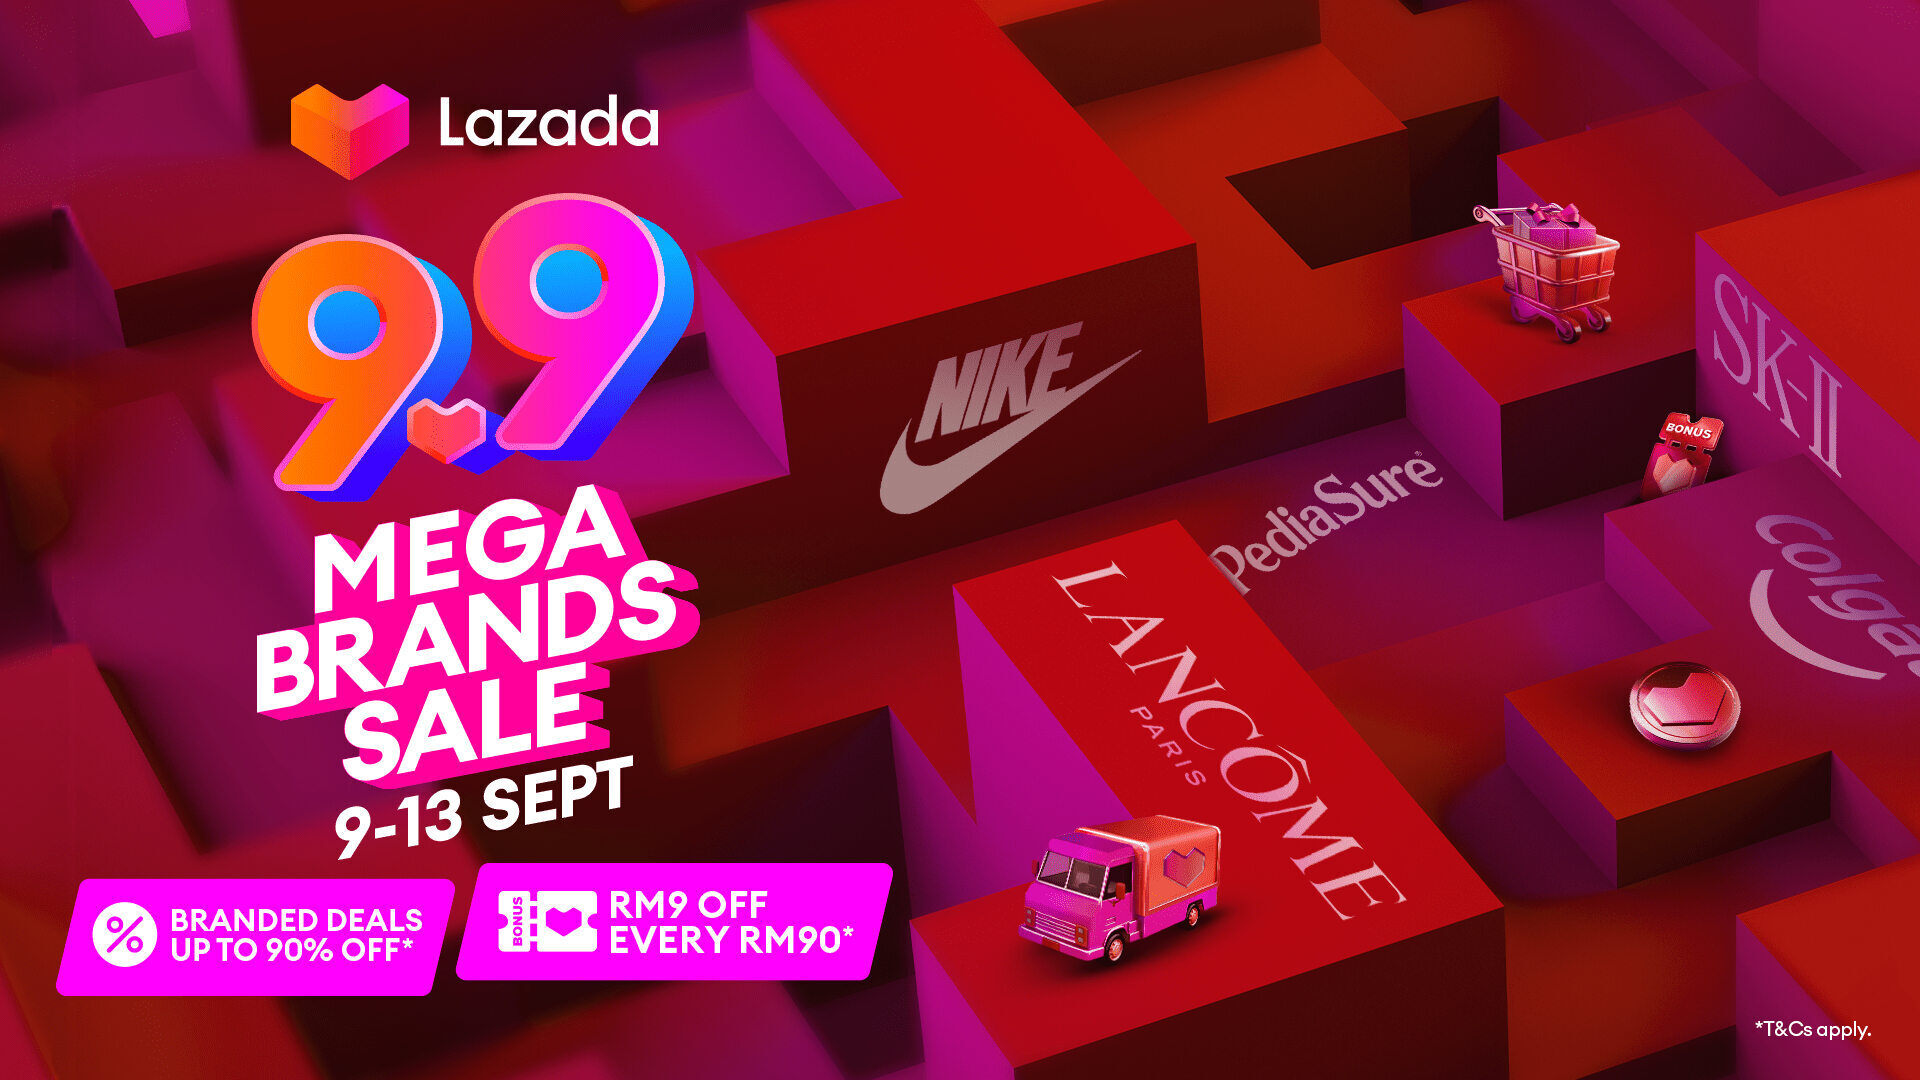 rsz eng press release lazada 99 mega brands sale final 1